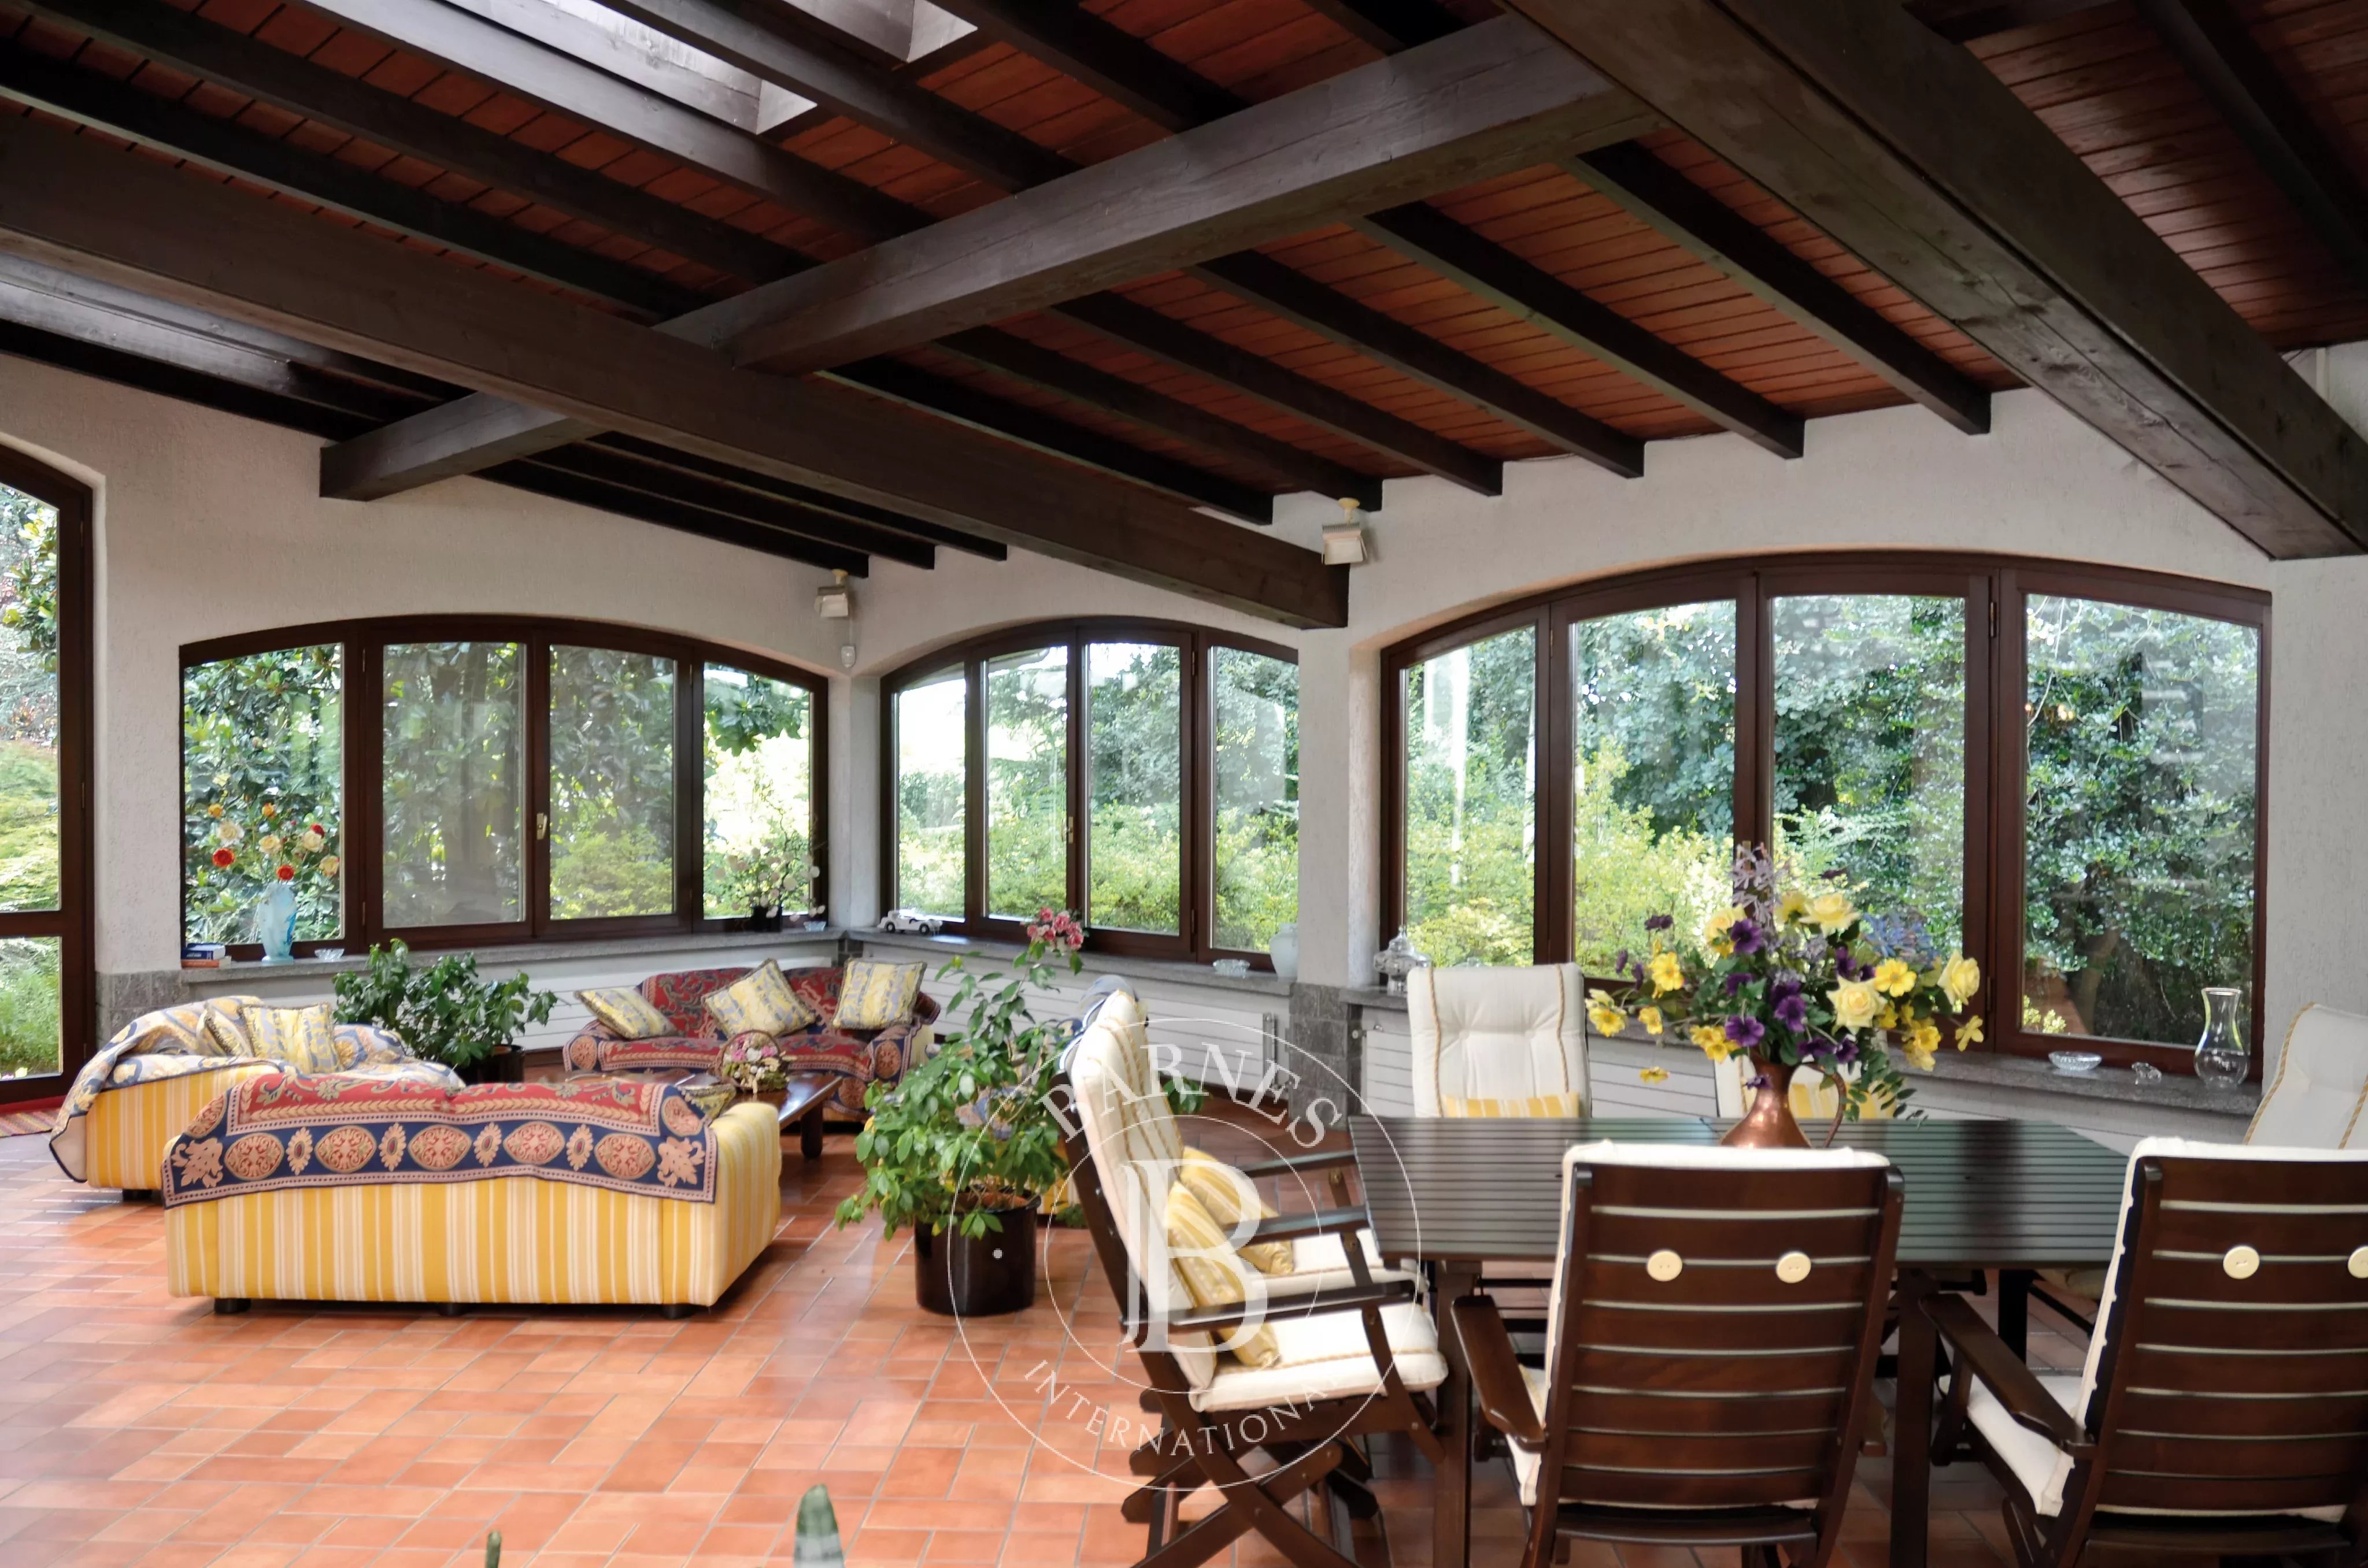 Prestigious villa with indoor pool, stable and park. Borgomanero. Area Lakes: Maggiore and d'Orta - picture 13 title=